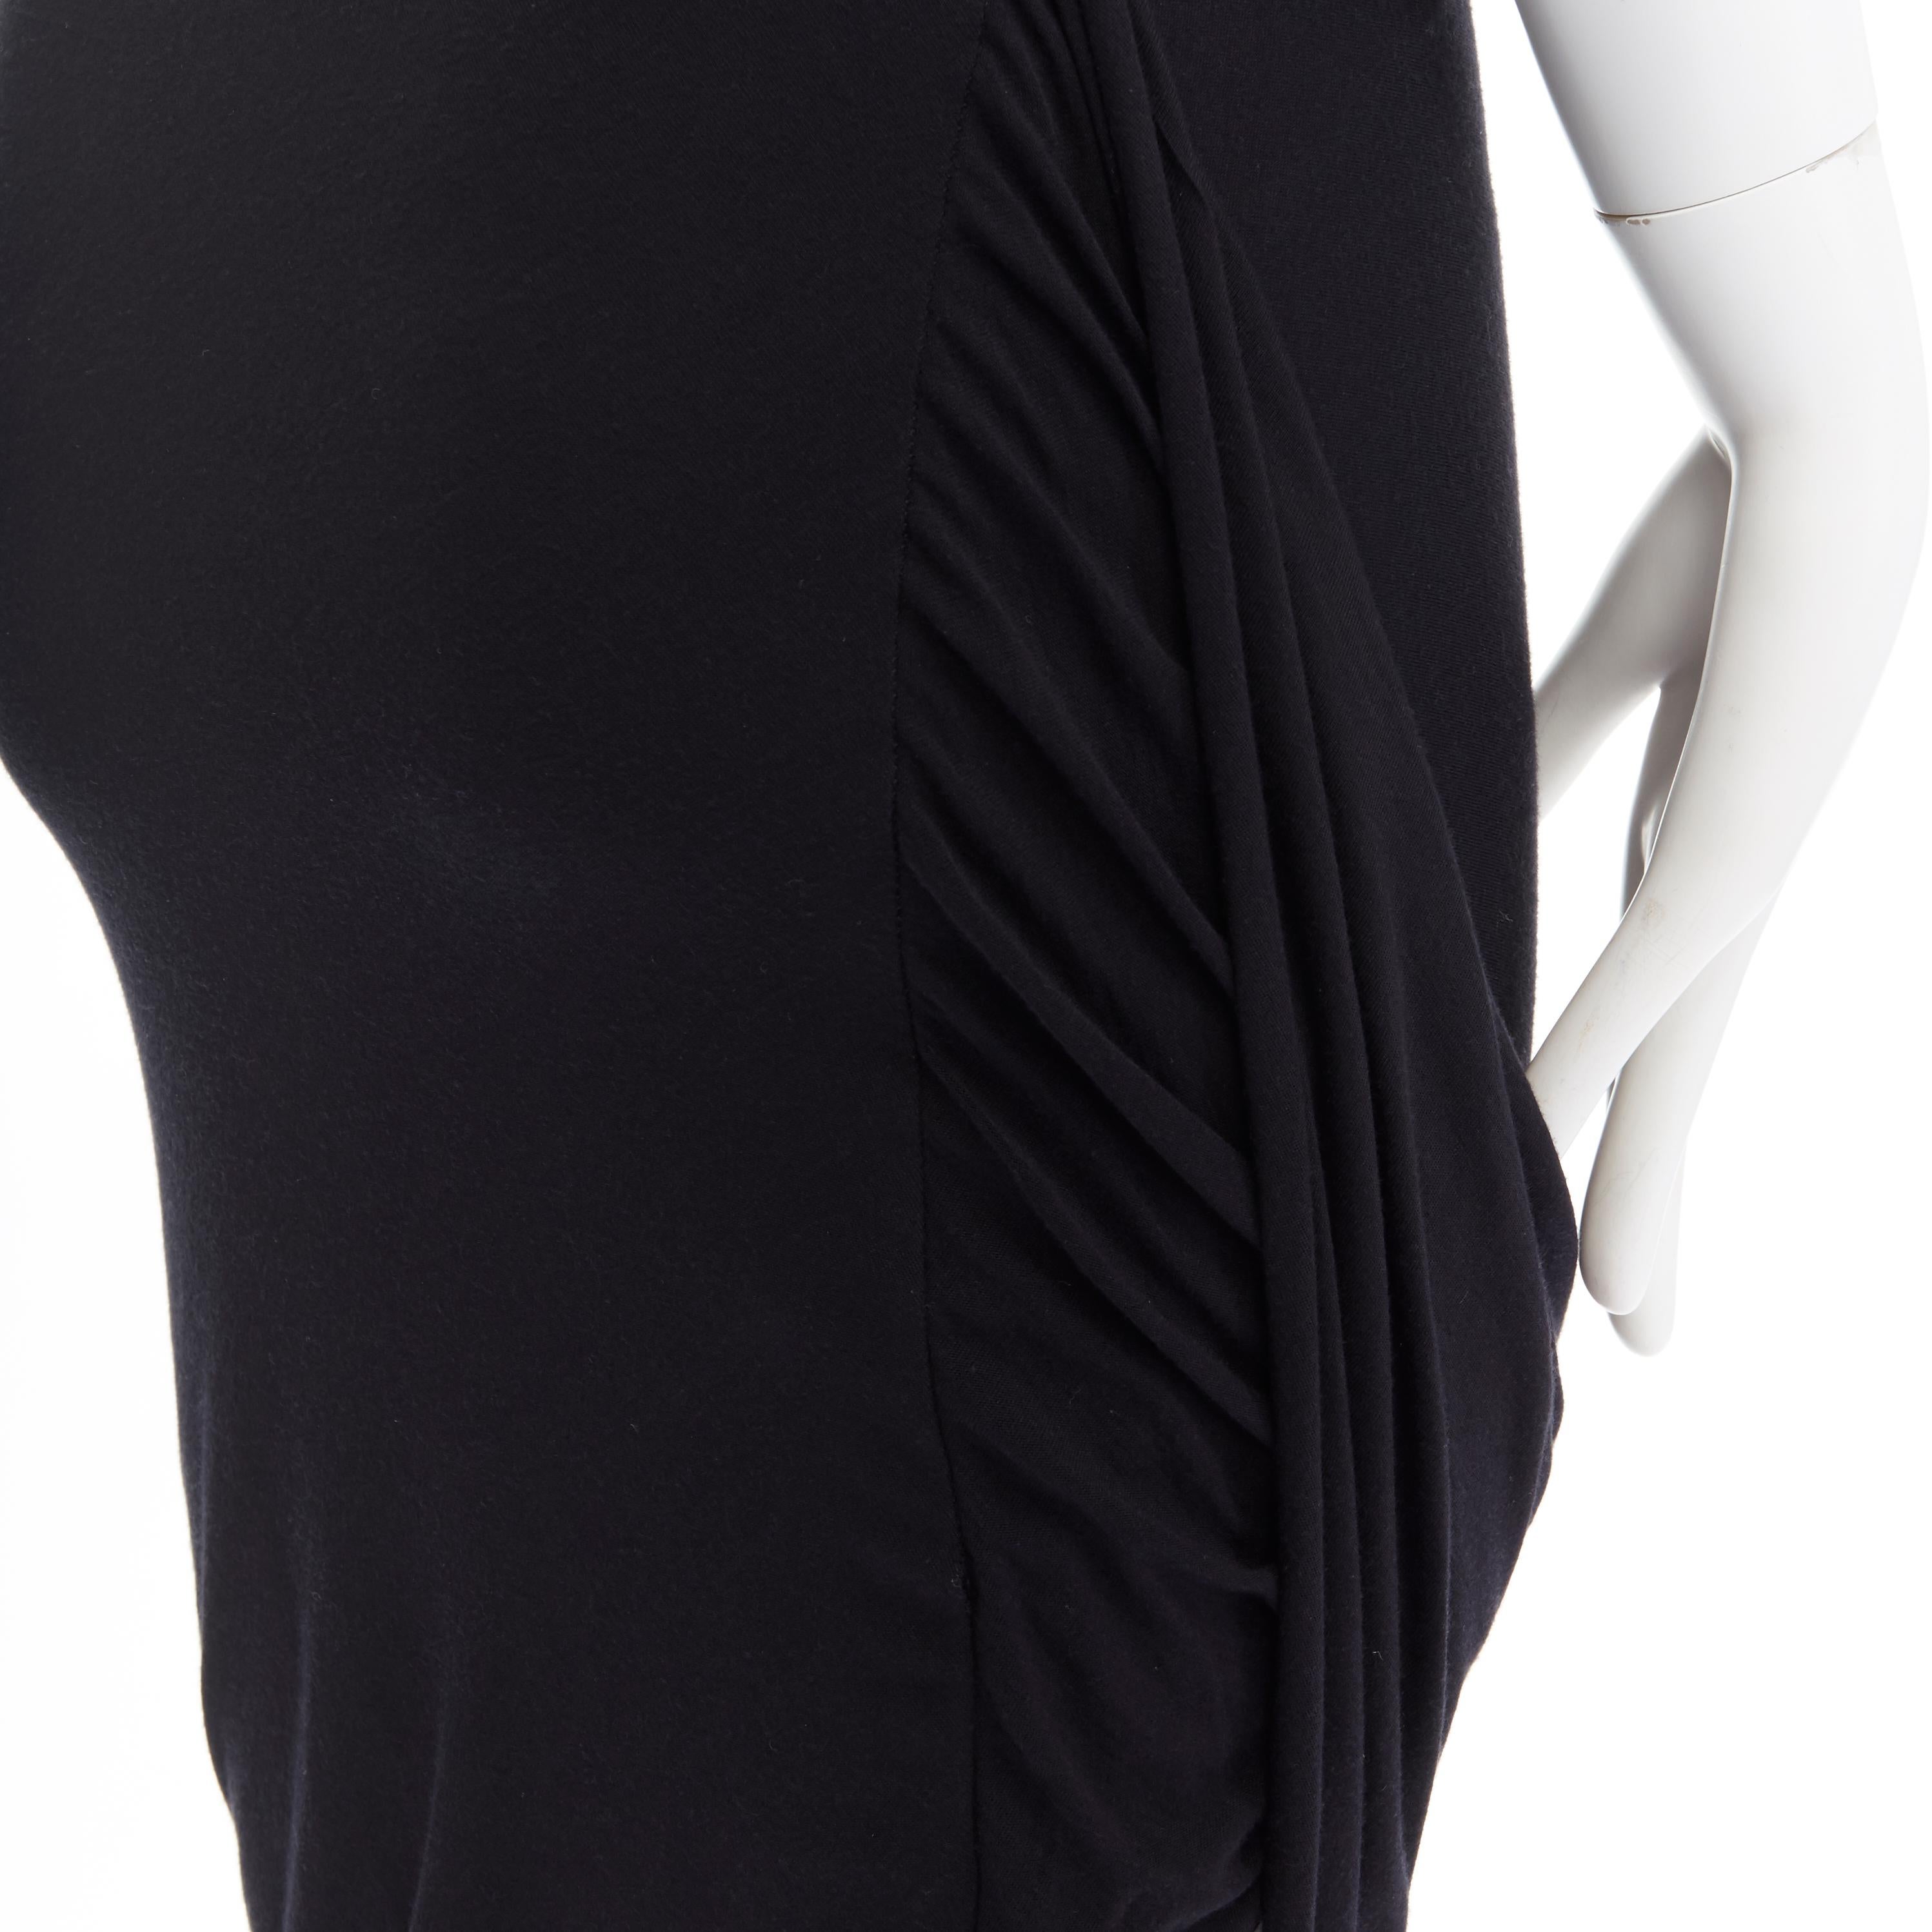 Women's HELMUT HELMUT LANG black micro modal nylon draped open side casual skirt XS